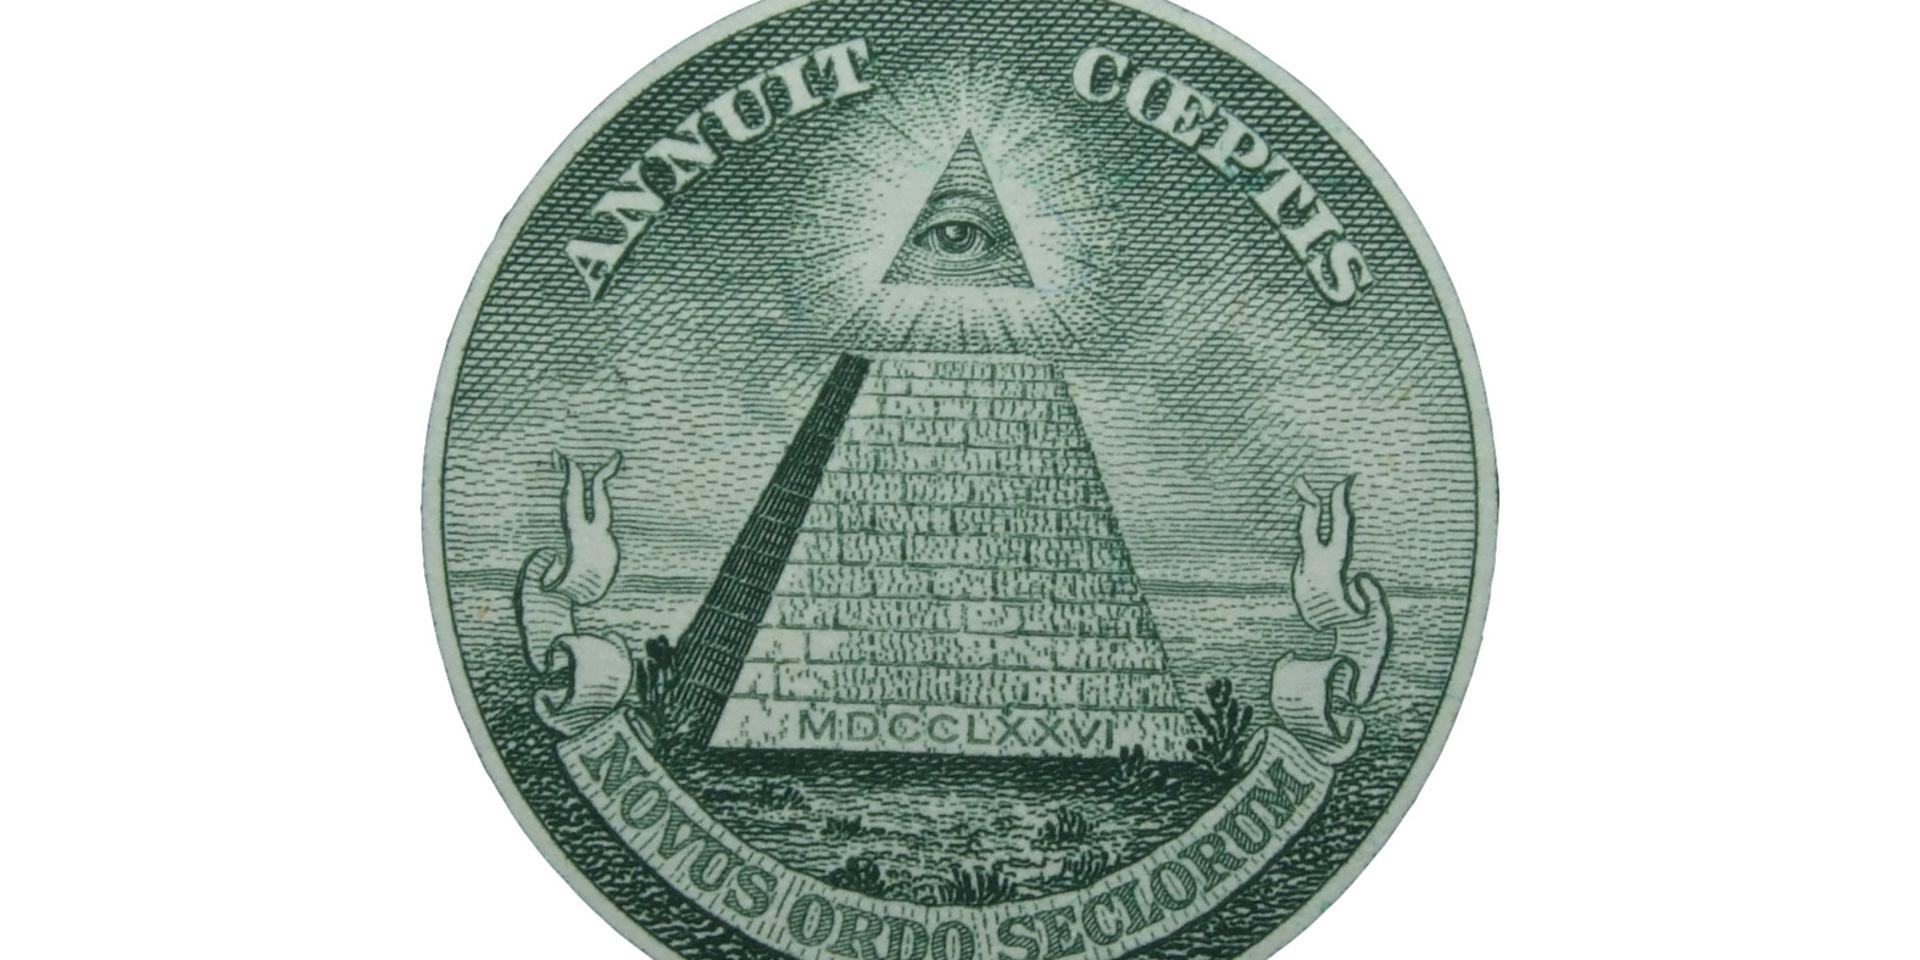 På baksidan av USA:s stora sigill finns denna bild som många konspirationsteoretiker anser anspelar på Illuminatin, en tidig konspiration om ett hemligt världsherravälde.